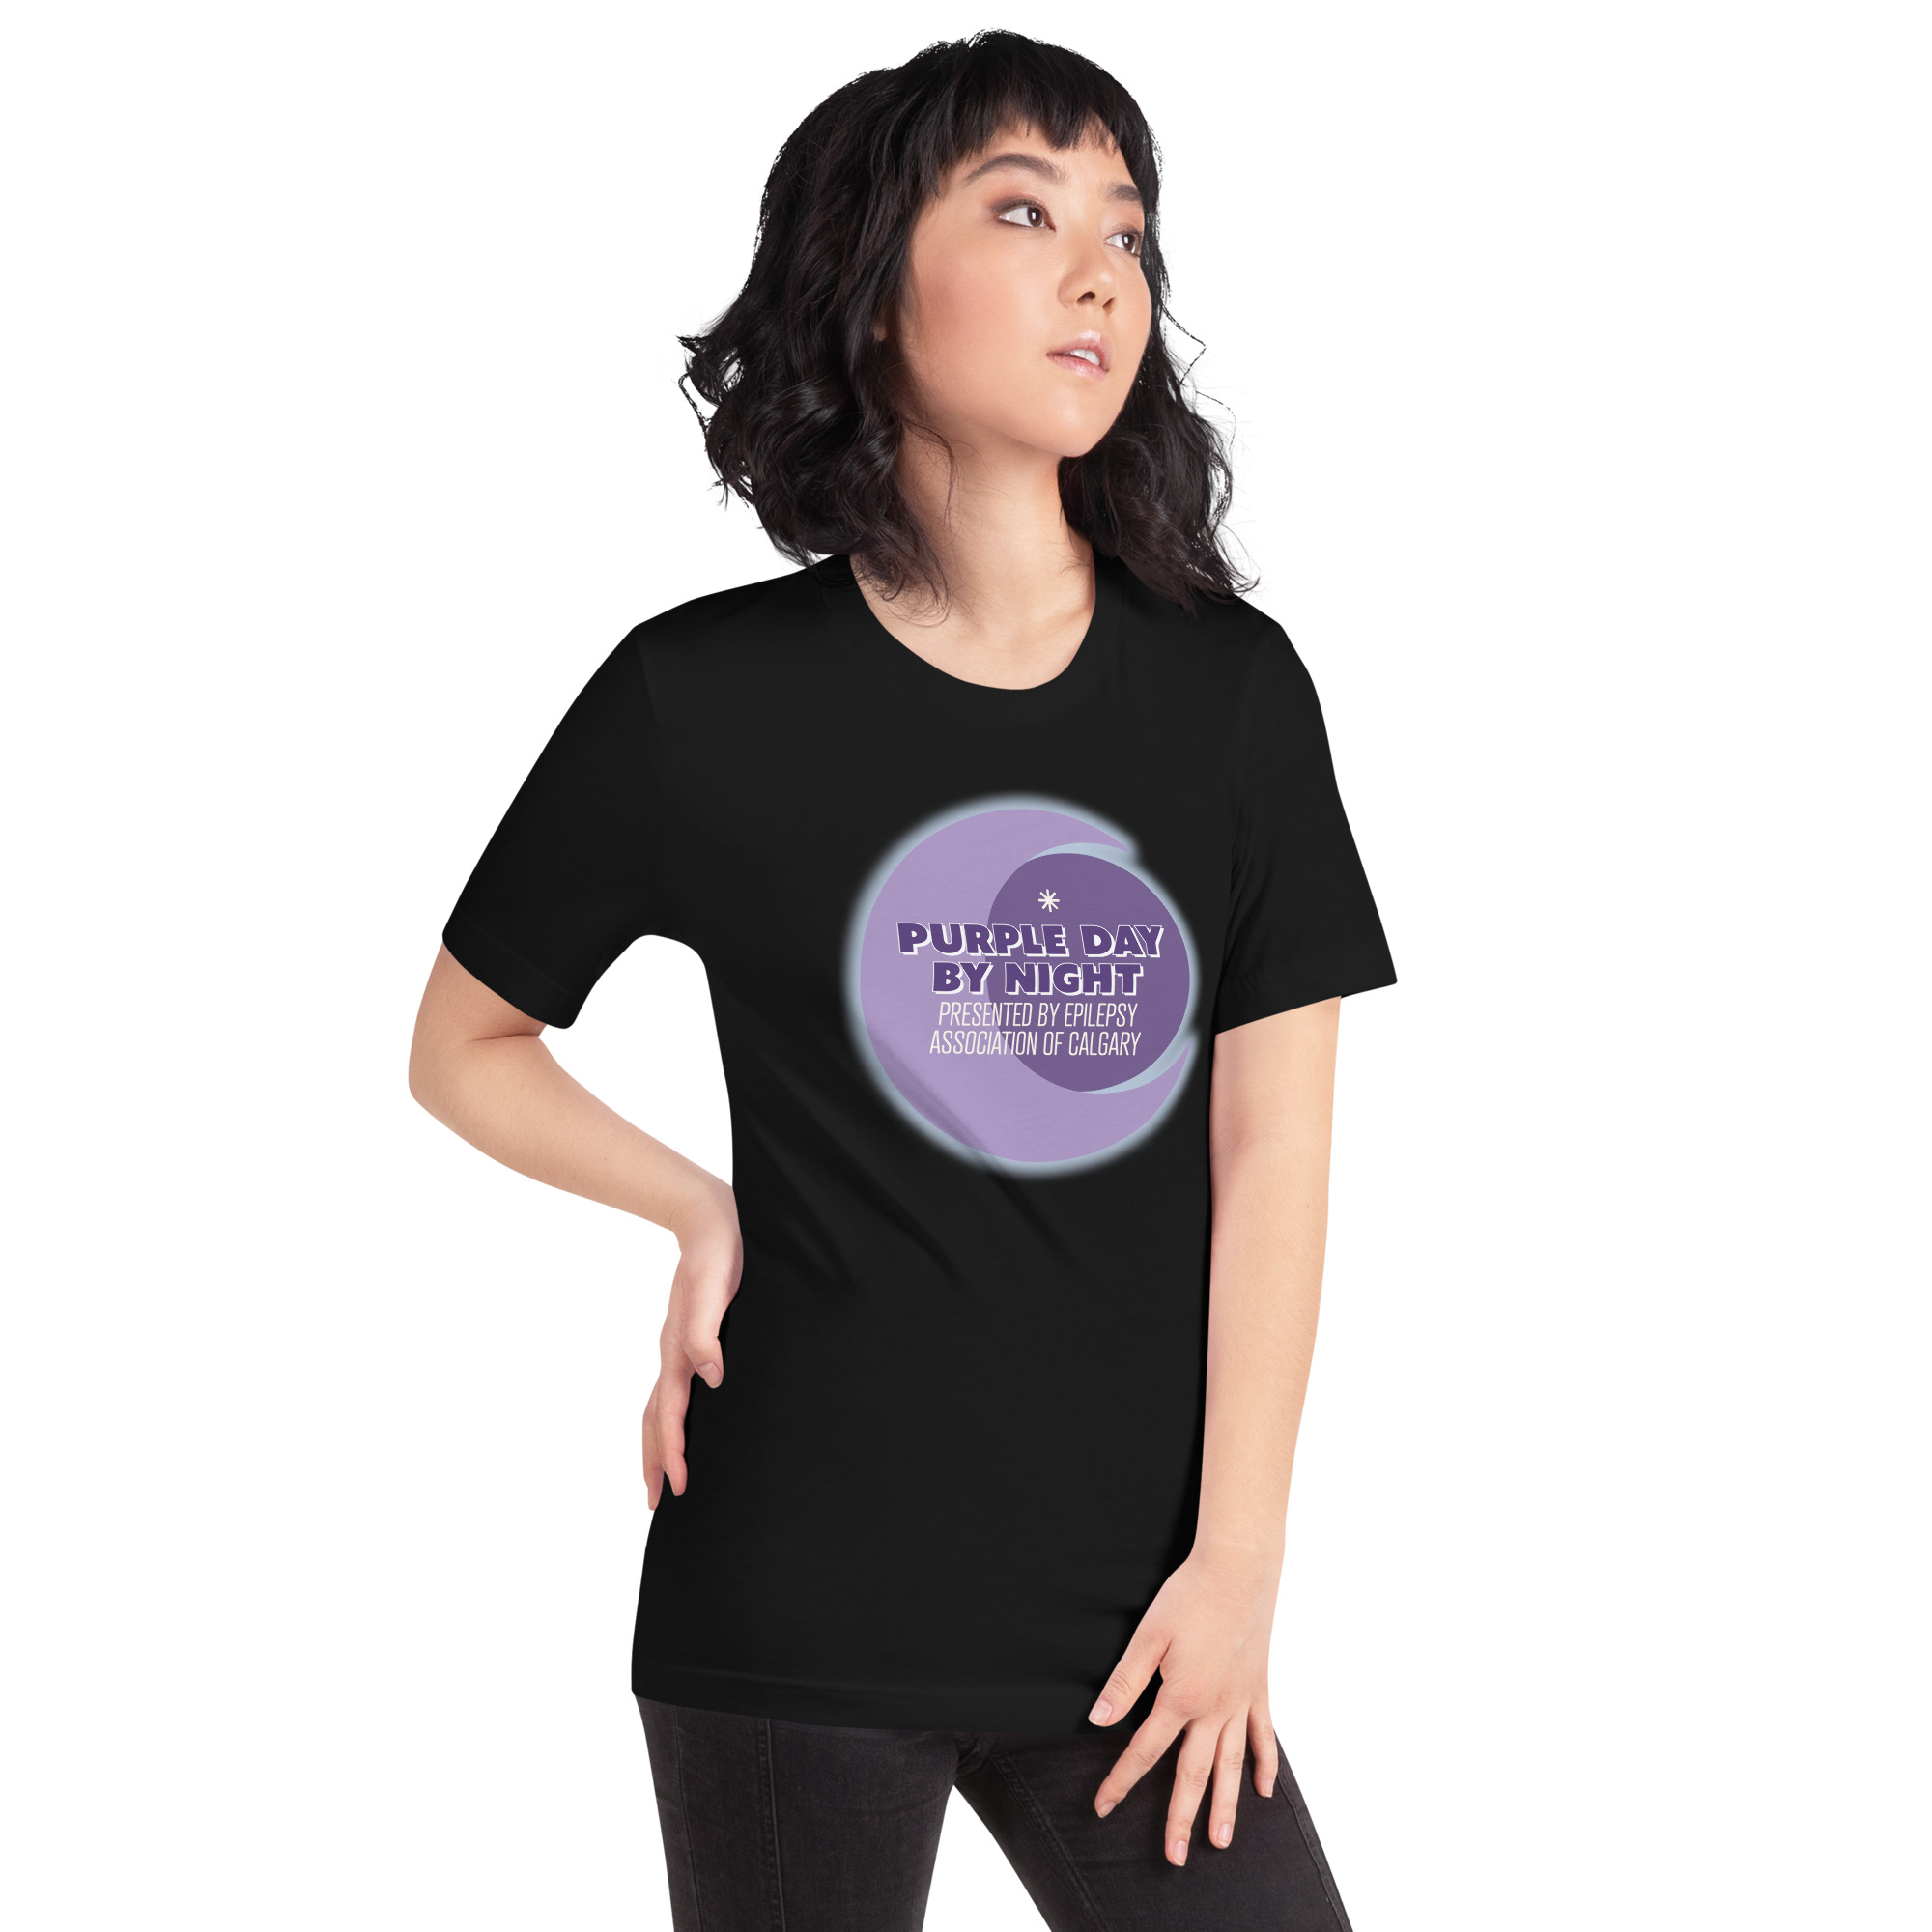 Purple Day by Night Basic T-shirt